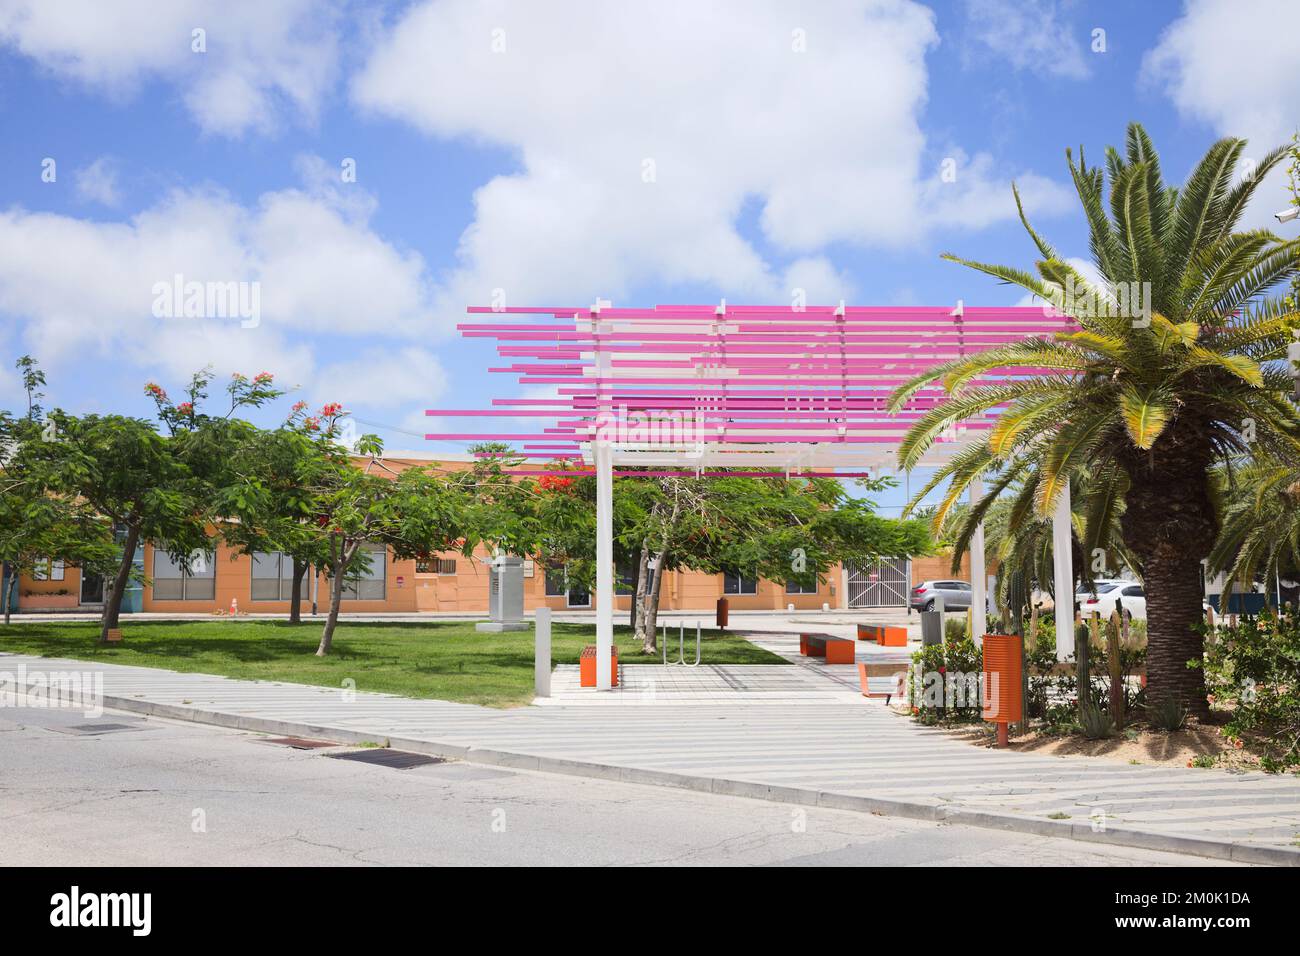 ORANJESTAD, ARUBA - 17 JUILLET 2022 : Parc Gerrit Rietveld le long de Wilhelminastraat, dans le centre-ville d'Oranjestad, sur l'île des Caraïbes d'Aruba Banque D'Images